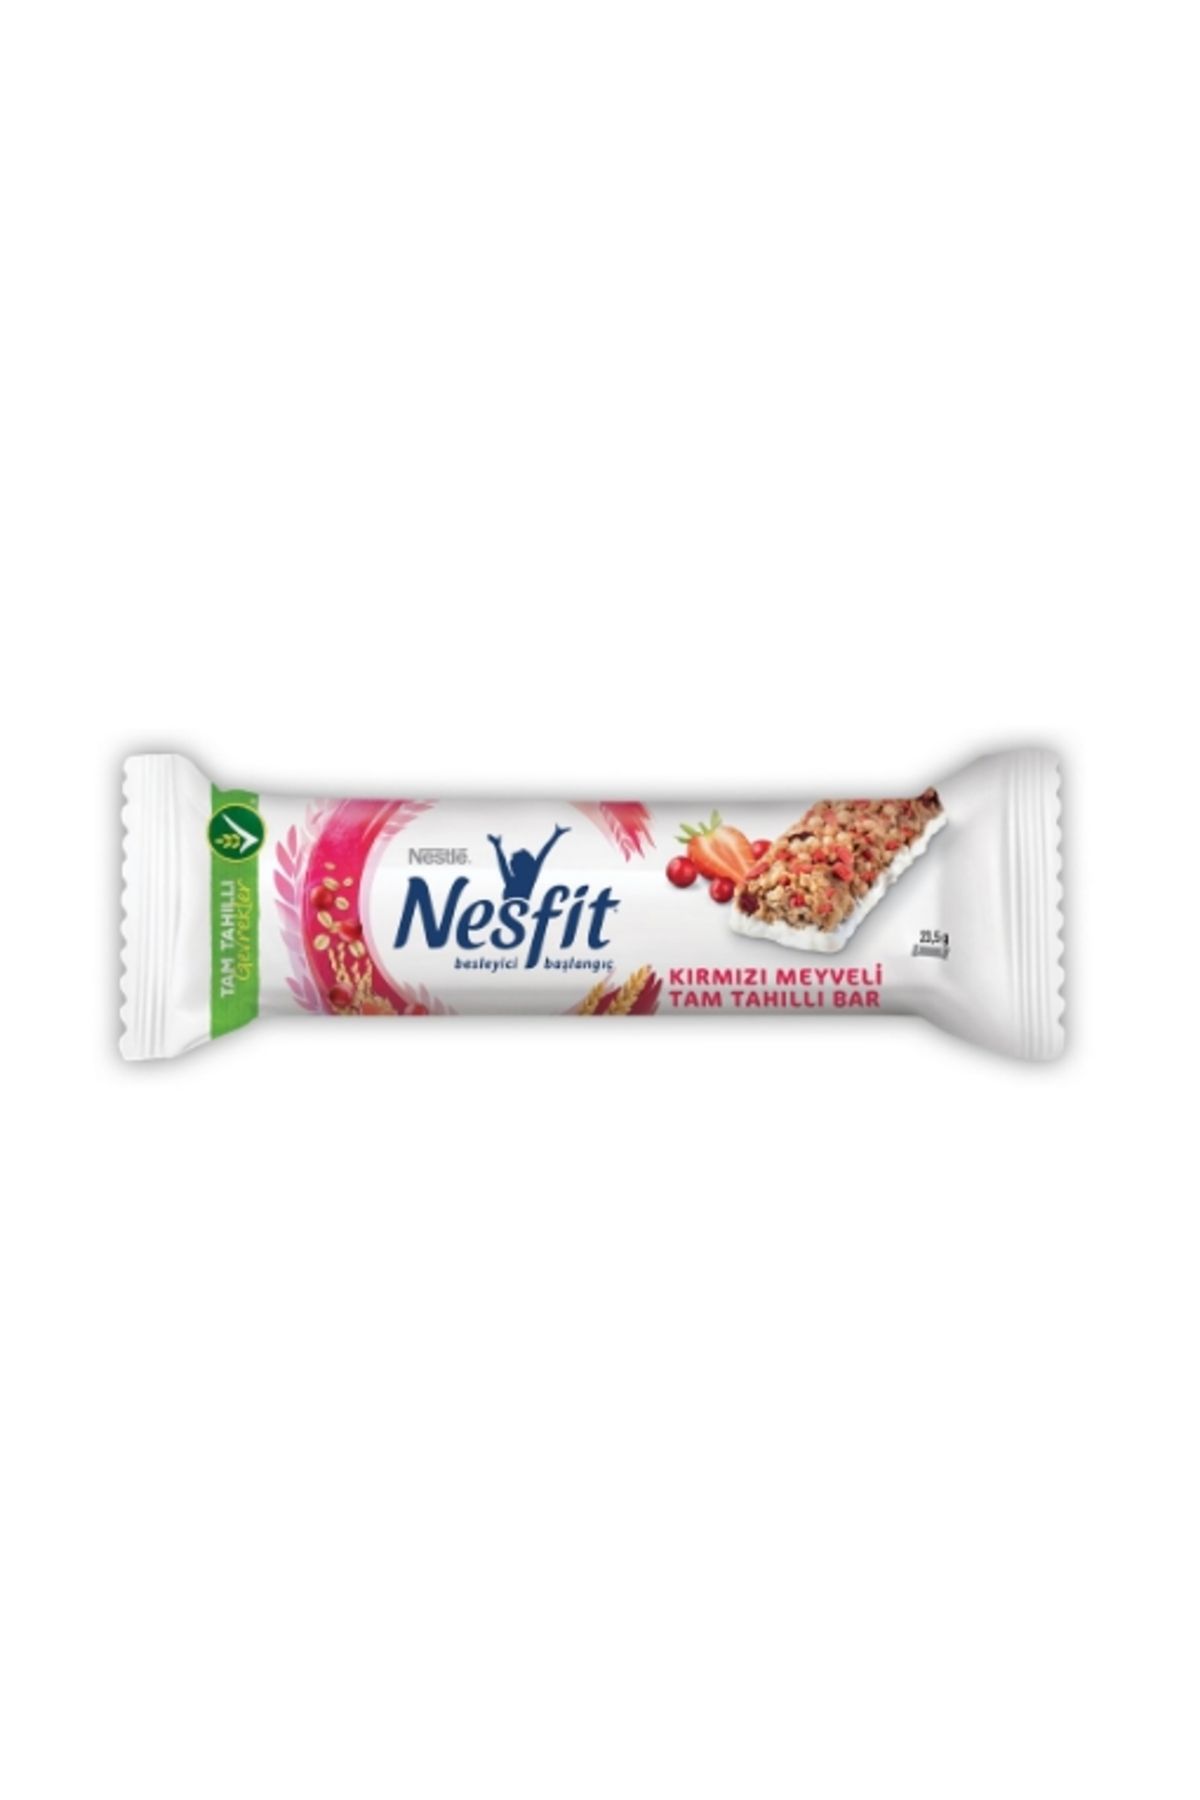 Nestle Kırmızı Meyveli Tam Tahıllı Bar 23,5 Gr. (2'li)